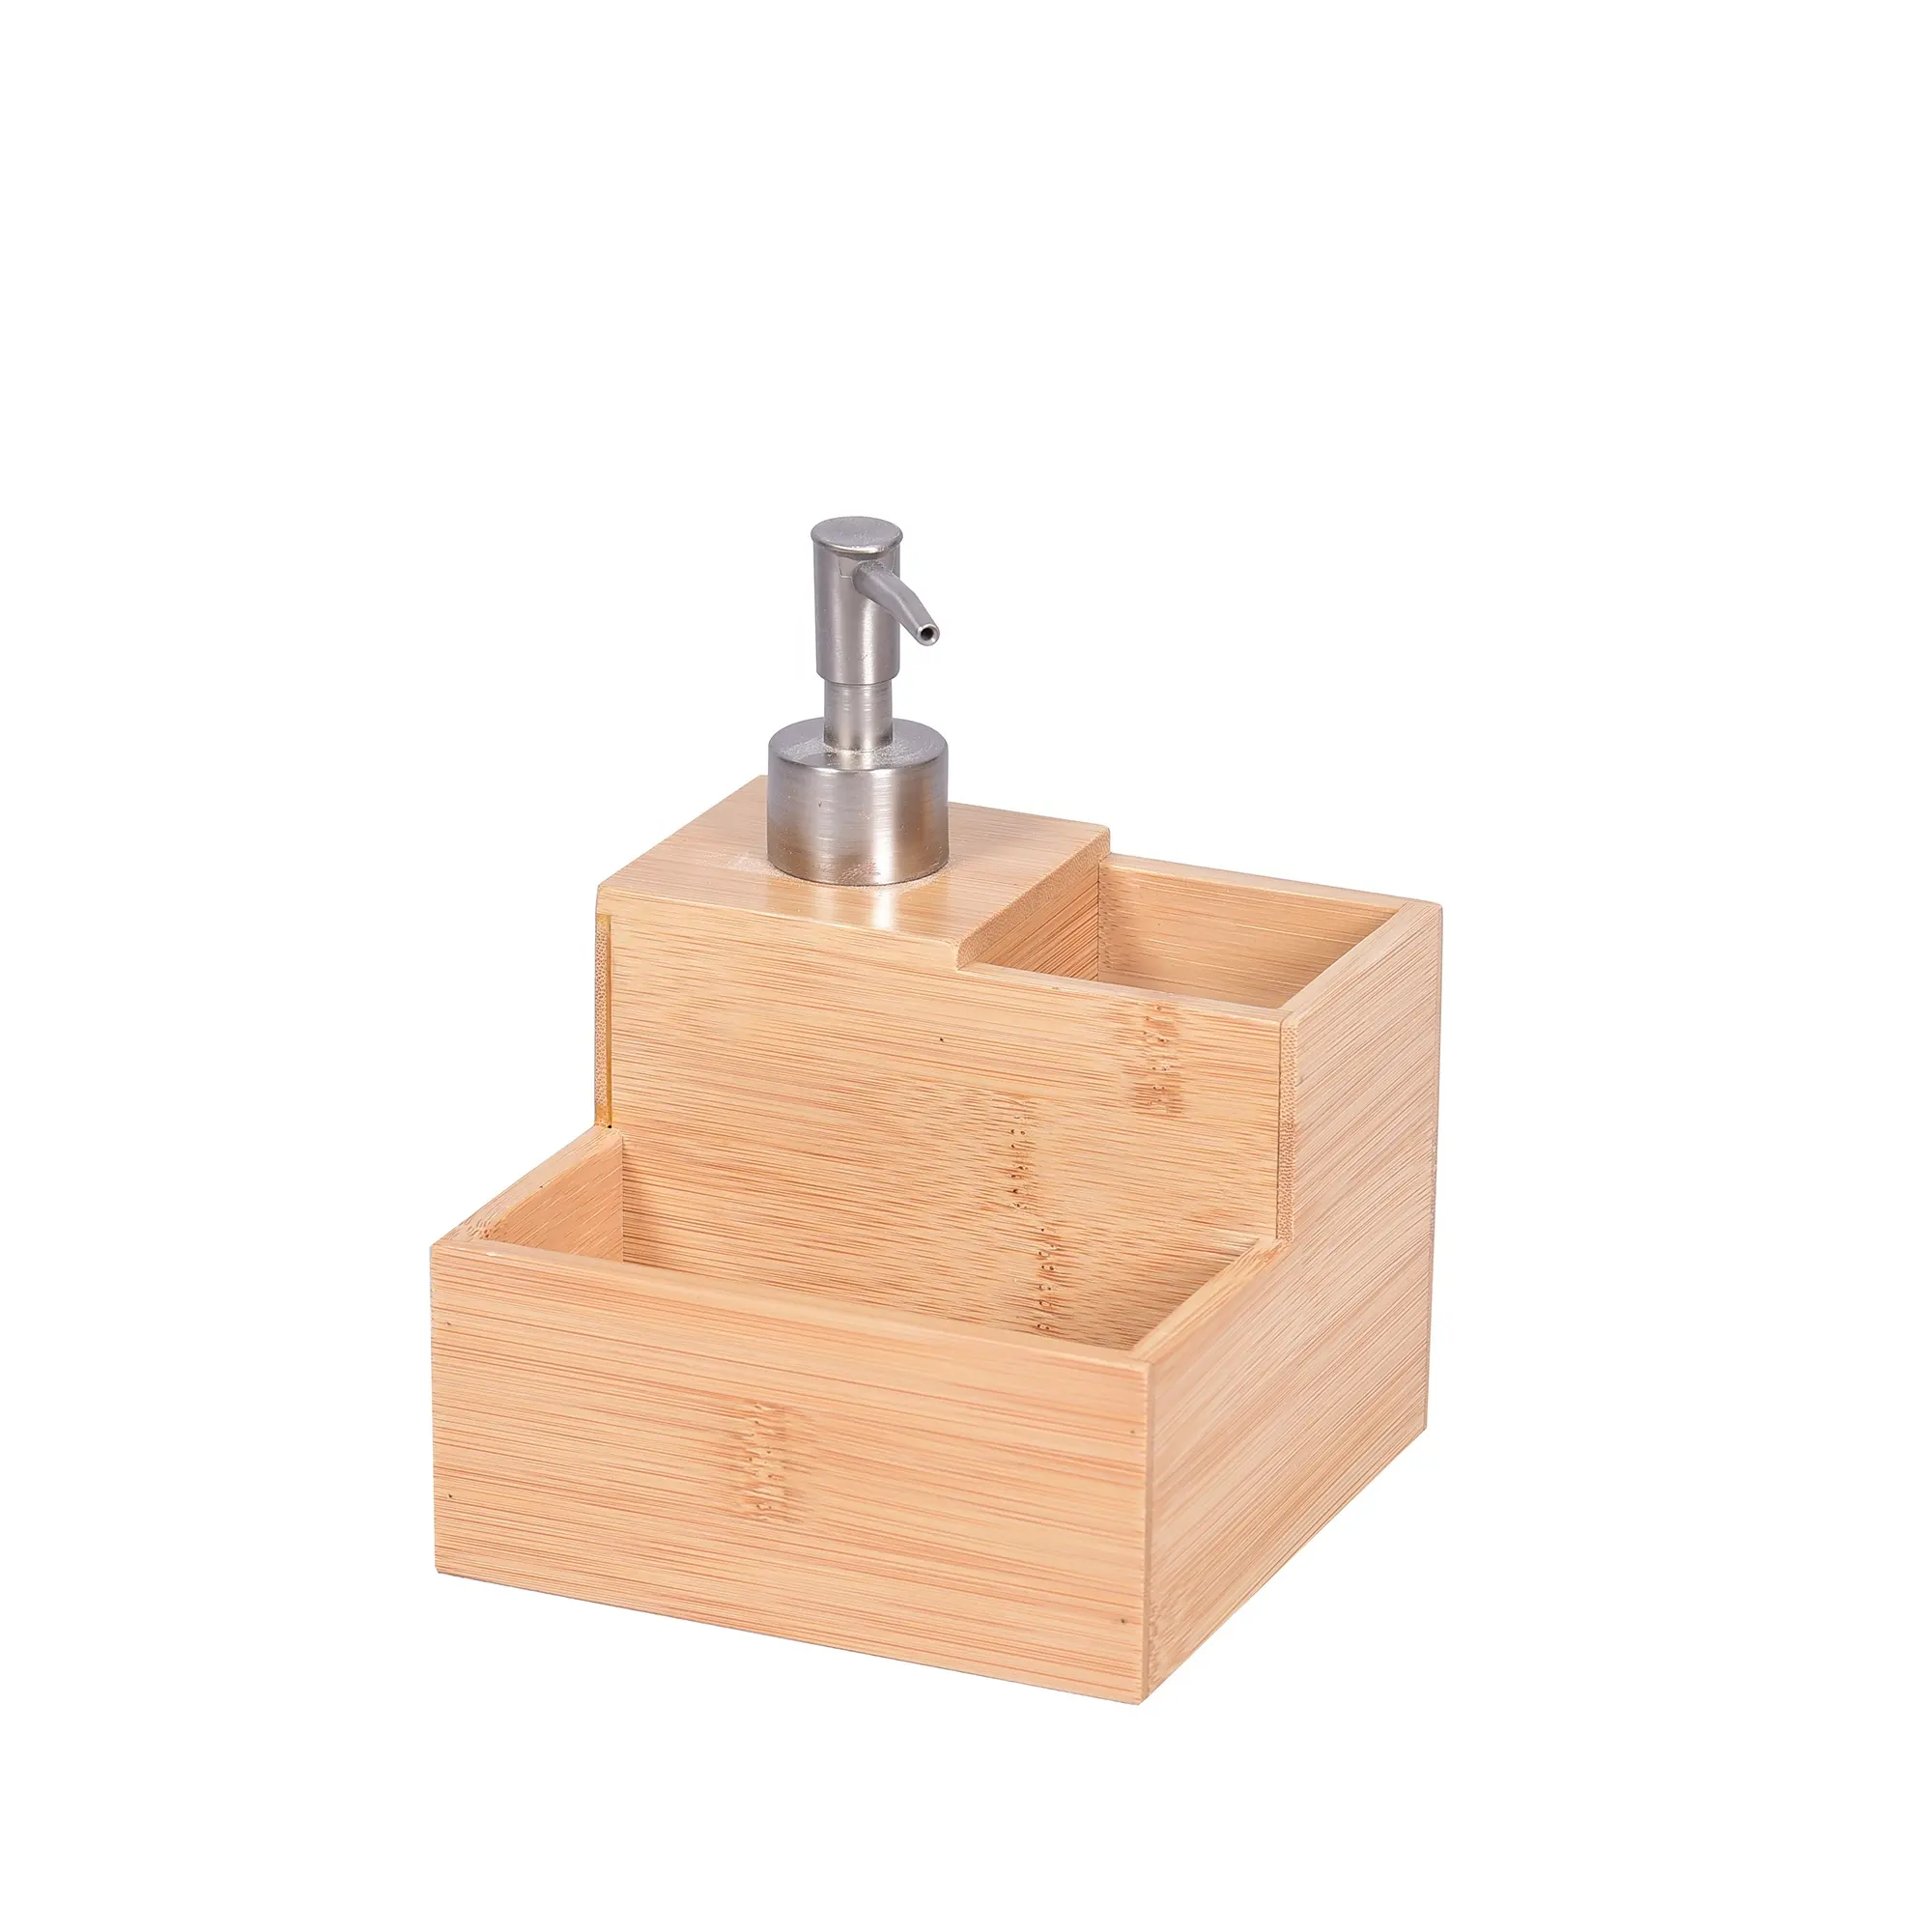 Umwelt freundlicher Bambus-Badezimmer-Set-Lotion spender Vierteilige, hochwertige, vielseitige Größen für zeitgemäßes Badezimmer design